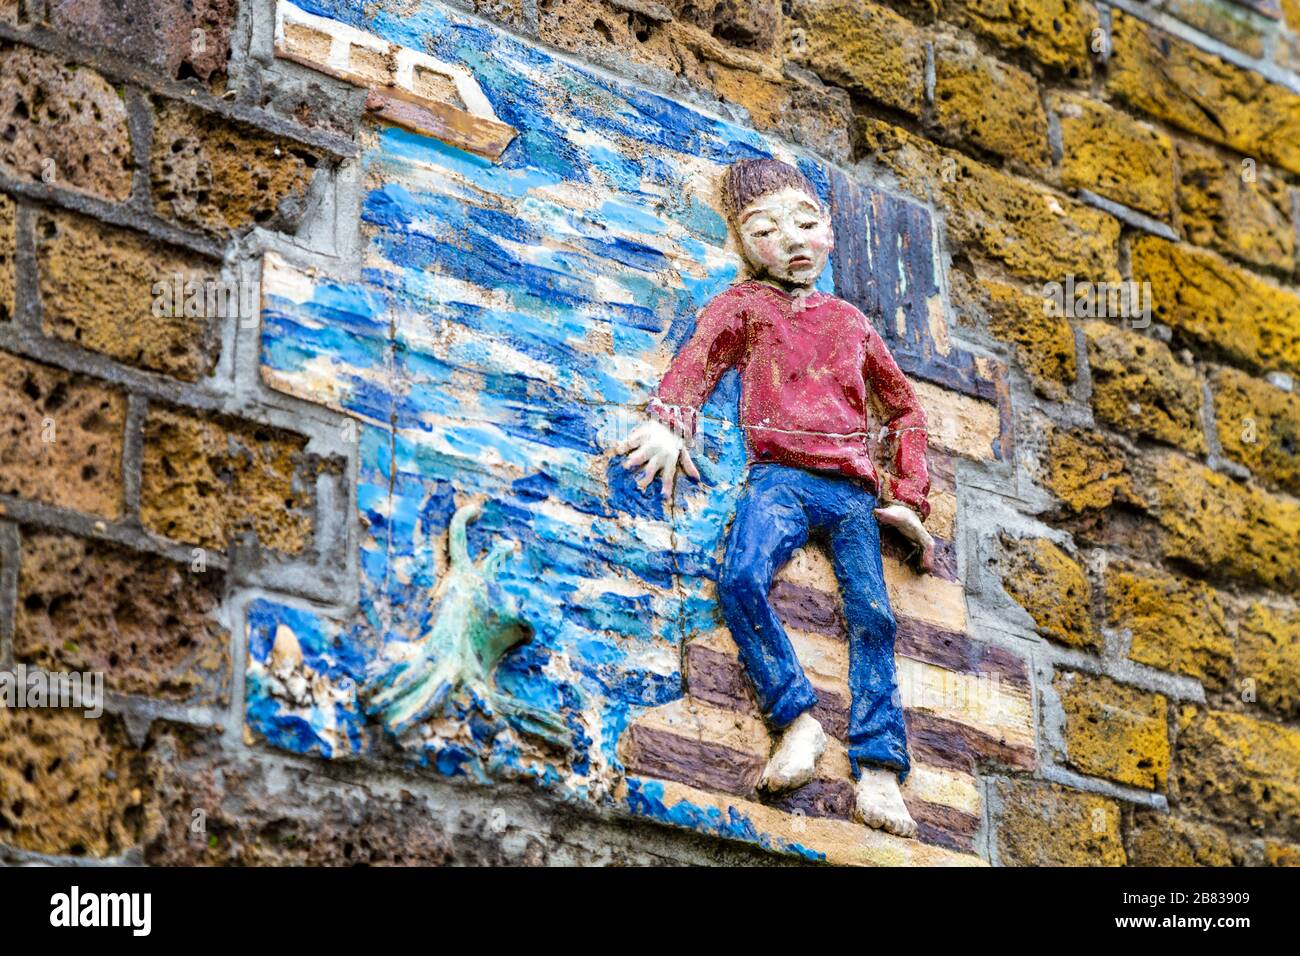 'A Thames Tale' Wall art par Amanda Hinge à Greenwich sur la Thames Path, Londres, Royaume-Uni Banque D'Images